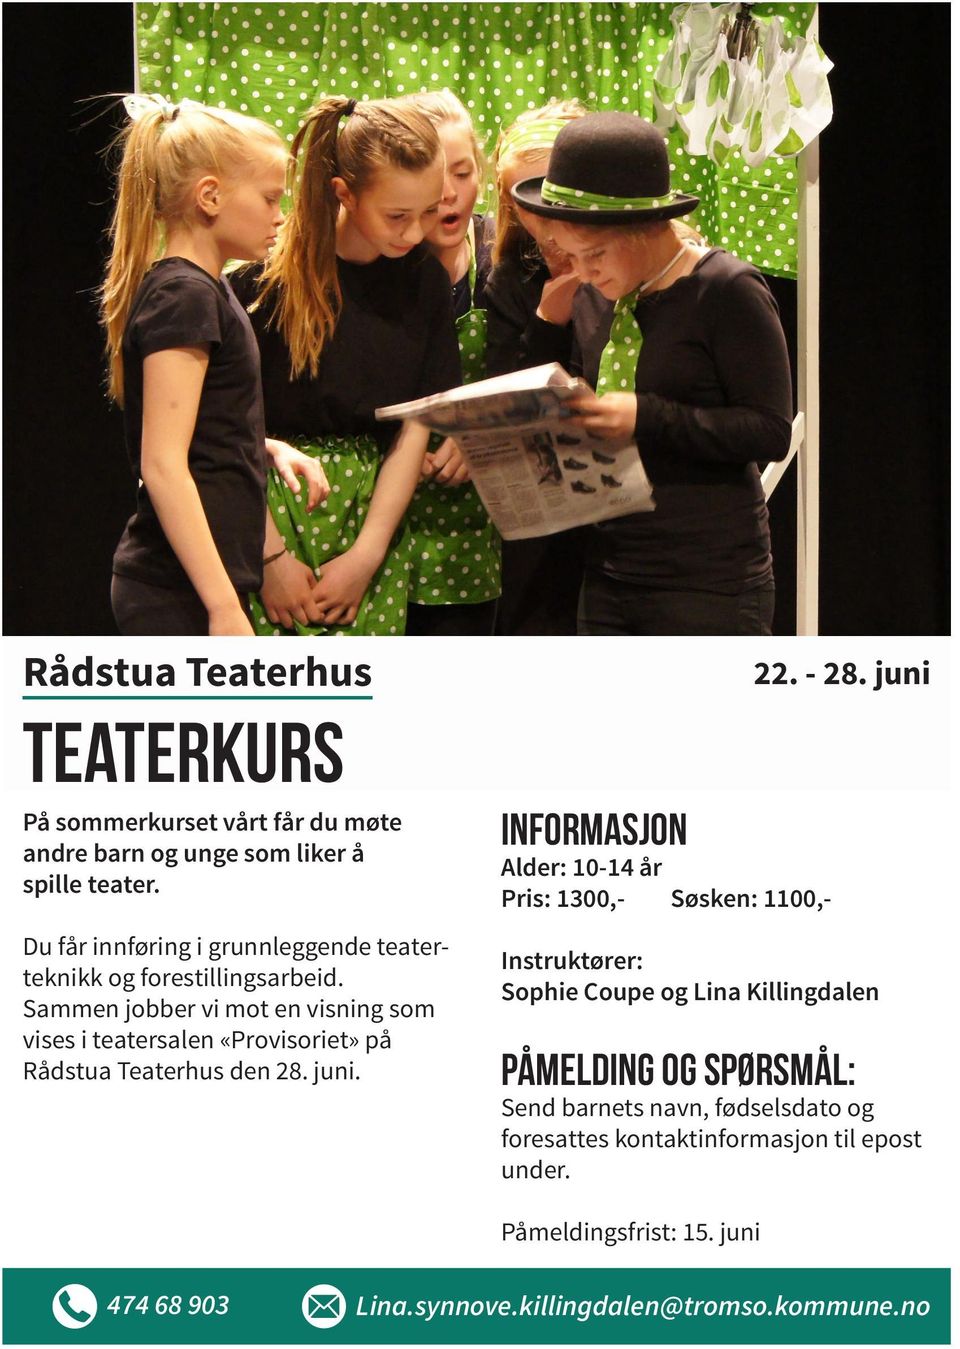 Sammen jobber vi mot en visning som vises i teatersalen «Provisoriet» på Rådstua Teaterhus den 28. juni.